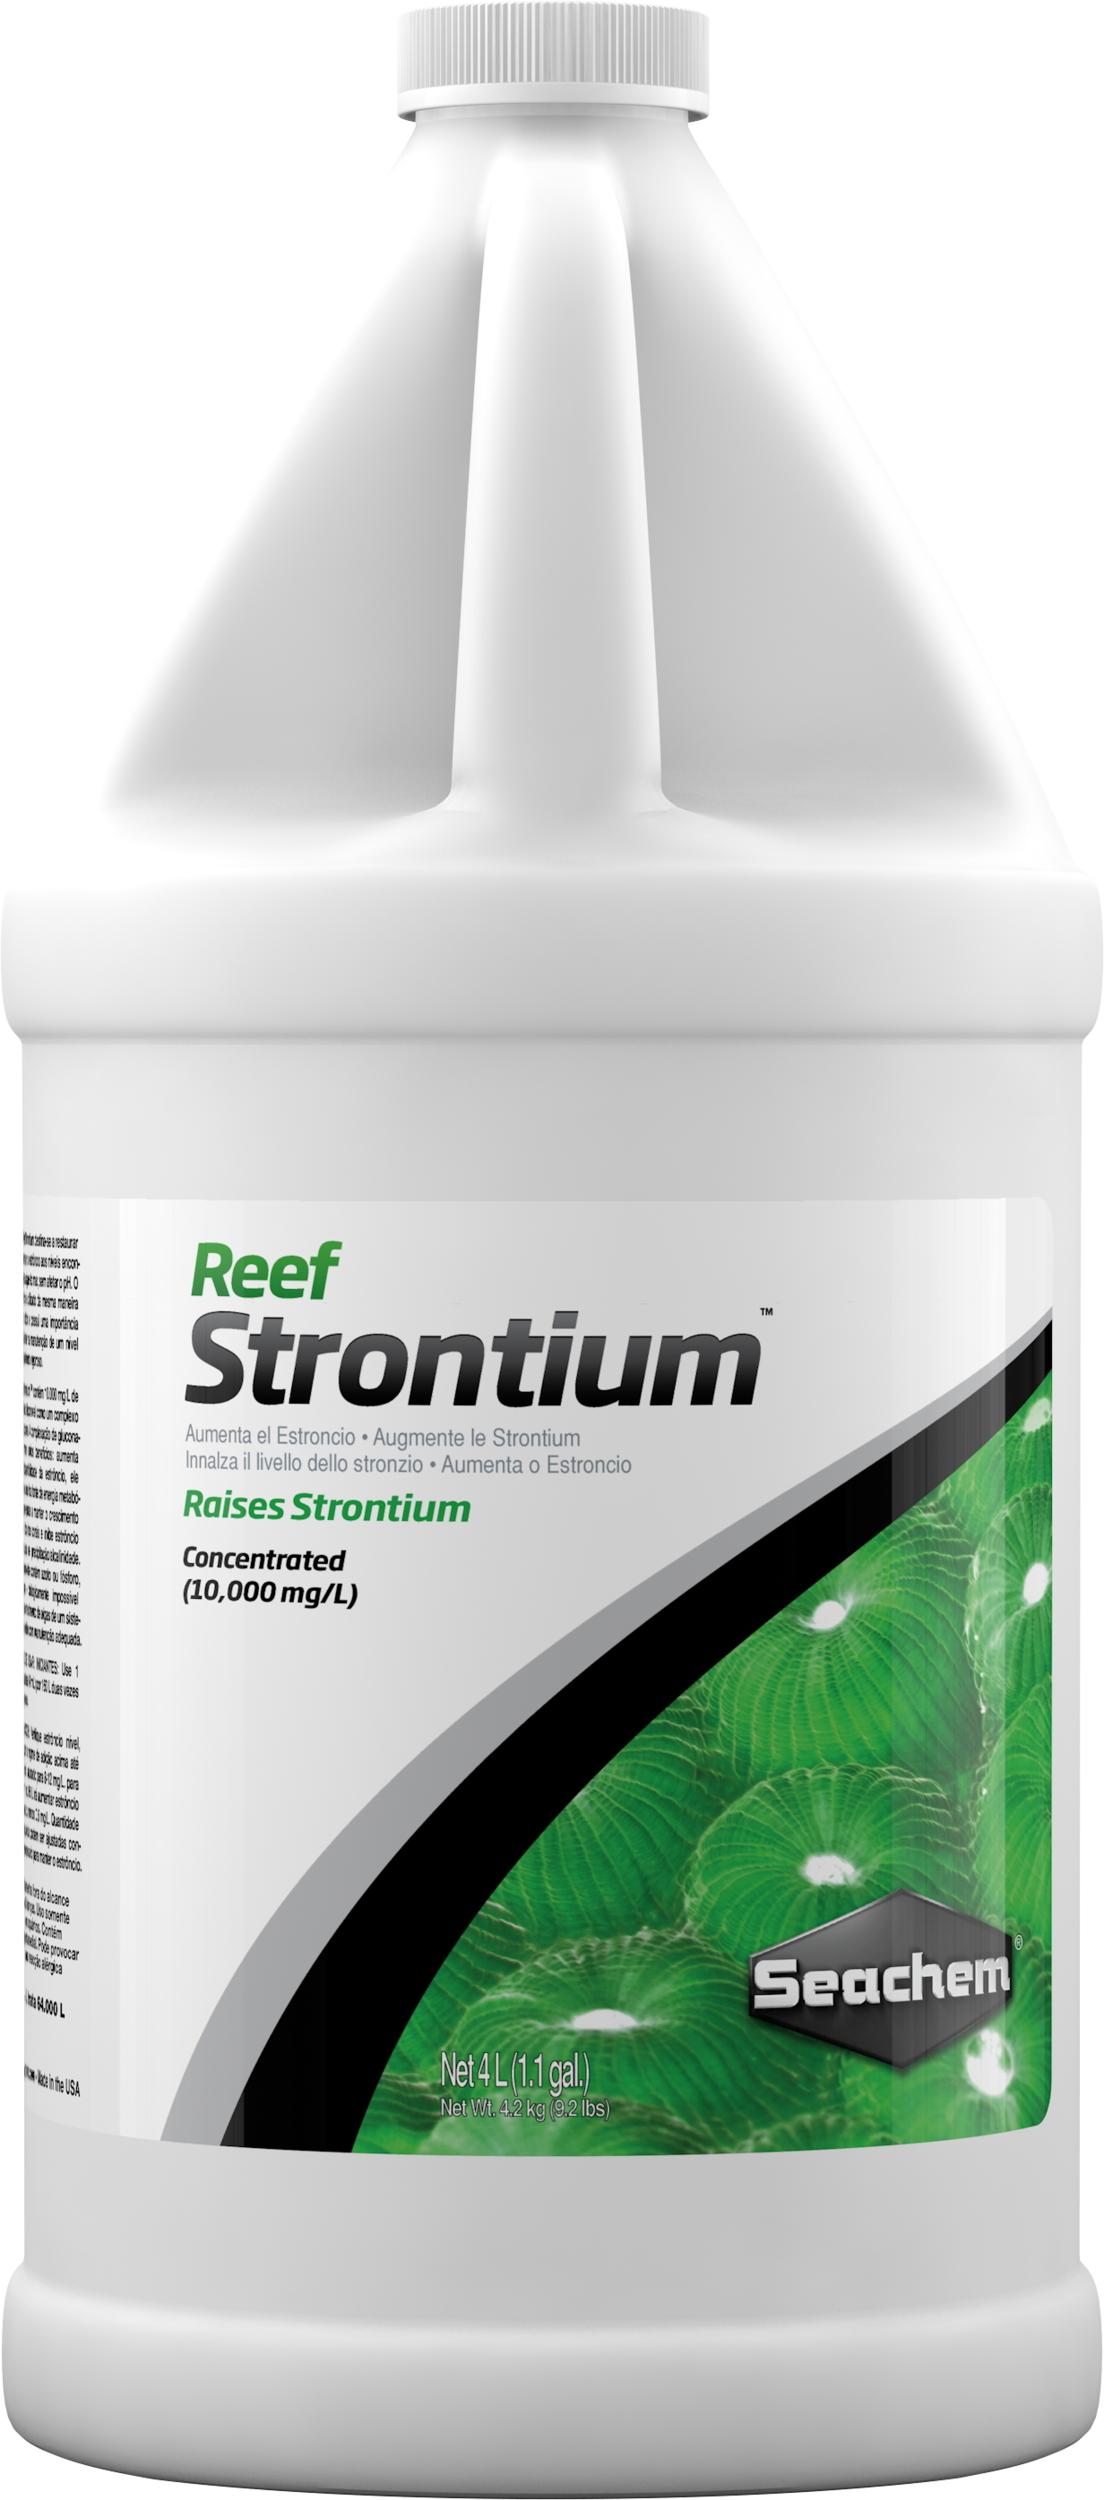 SEACHEM Reef Strontium 4 L complément concentré qui maintient et restaure le niveau de Strontium